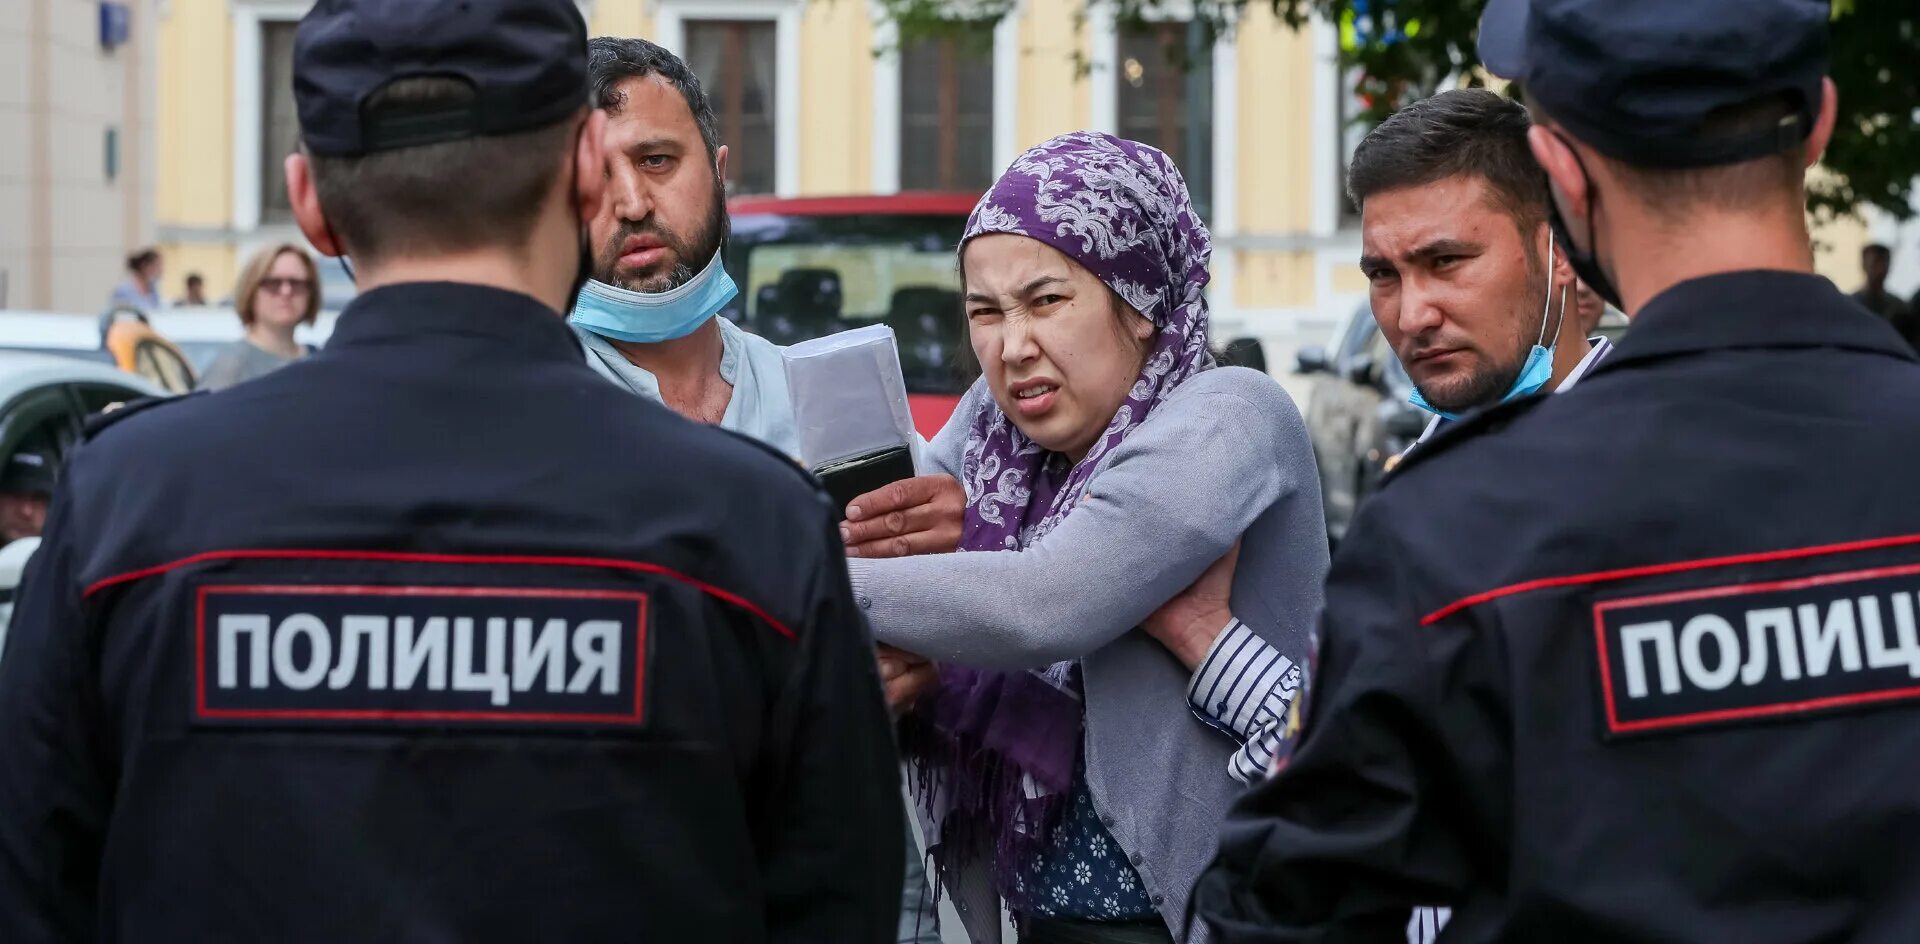 Мигранты в Москве. Таджикские мигранты. Таджики мигранты в Москве. Мигранты и полиция. Массовая депортация таджиков